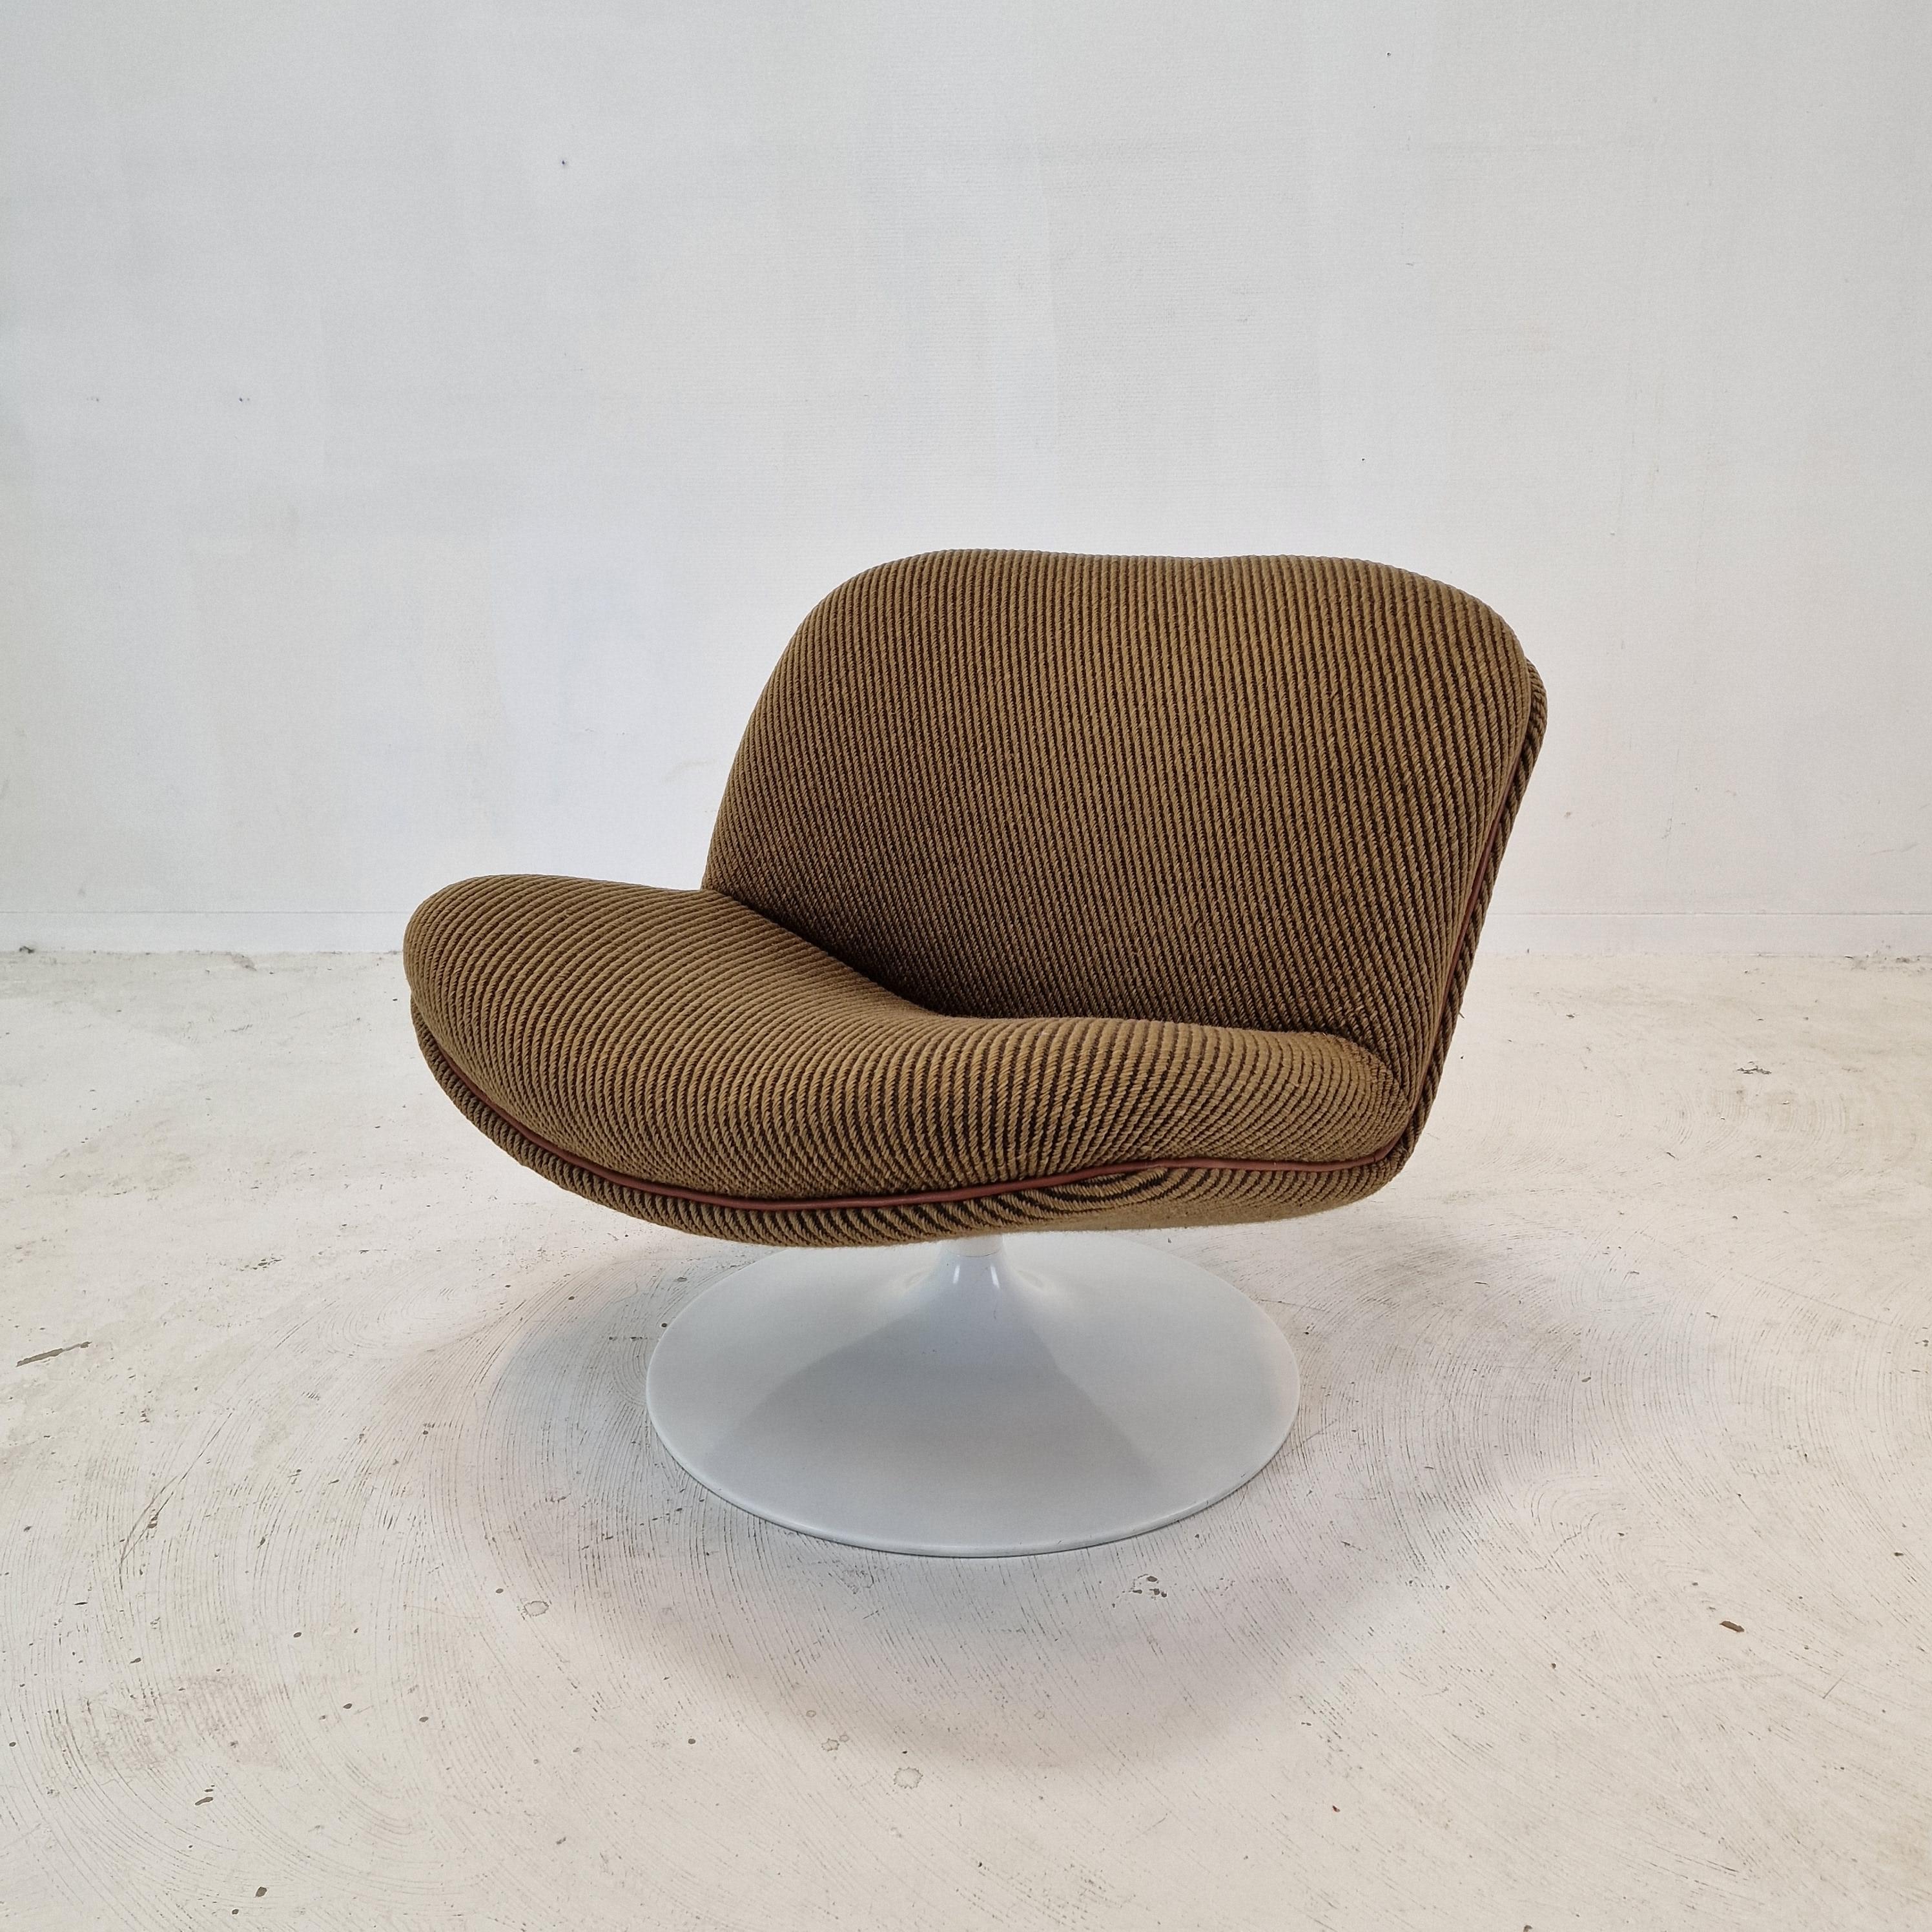 Chaise longue 508 très mignonne et confortable conçue par le célèbre Geoffrey Harcourt pour Artifort dans les années 70.

Cadre en bois très solide avec un grand pied métallique pivotant.  
La chaise est en tissu de laine d'origine de haute qualité,